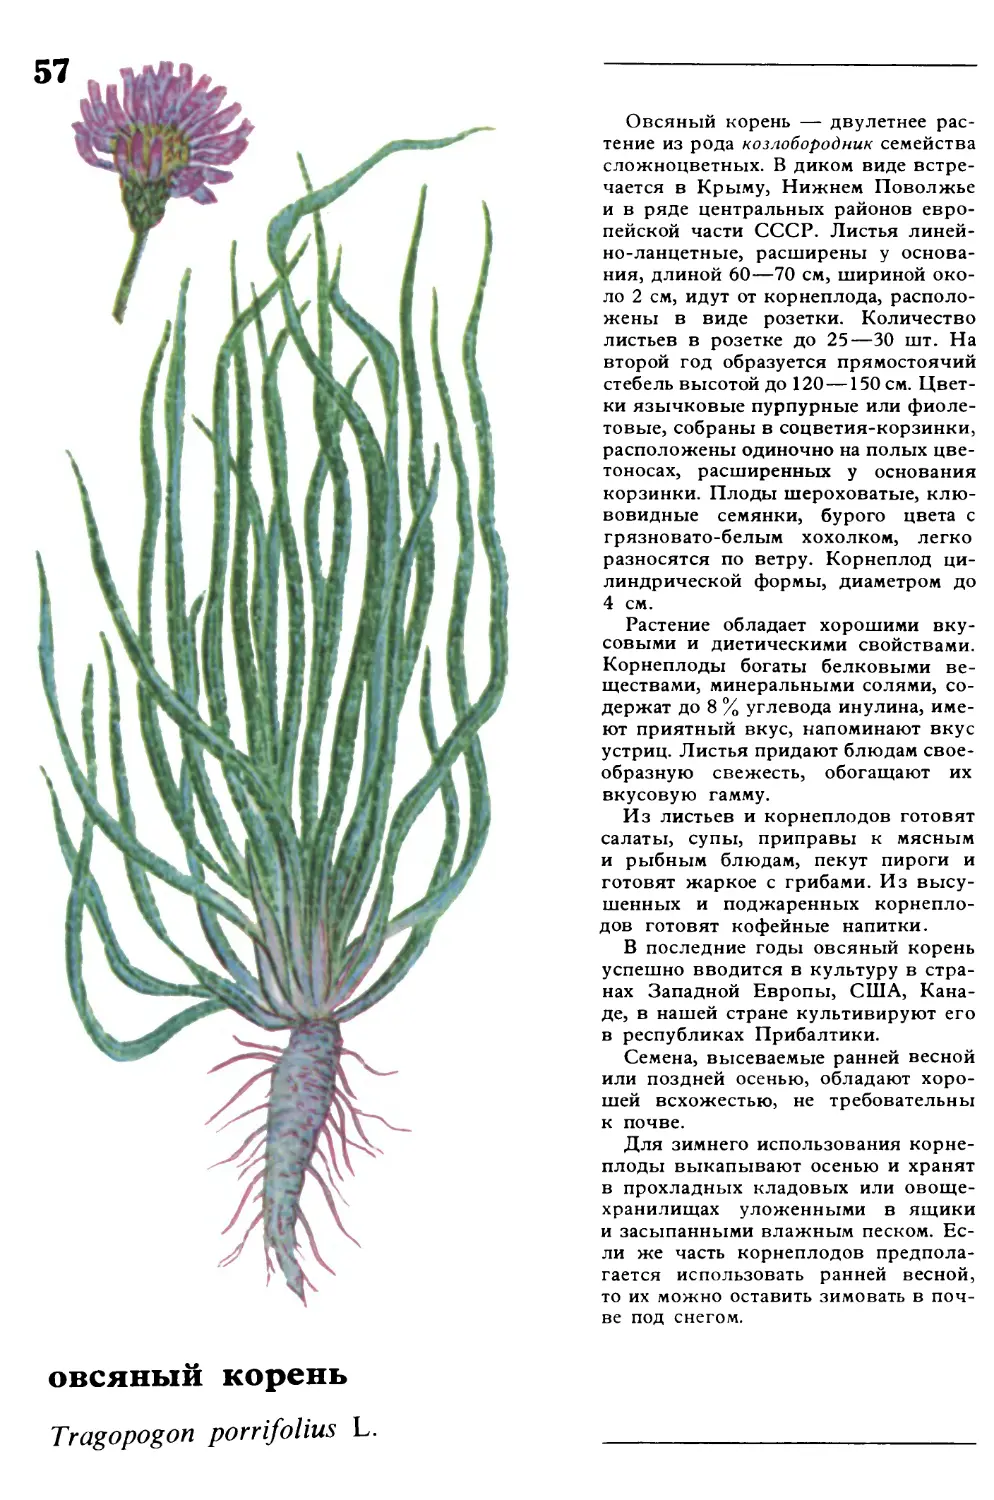 Овсяный корень
овсяный корень
Tragopogon porrifolius L.